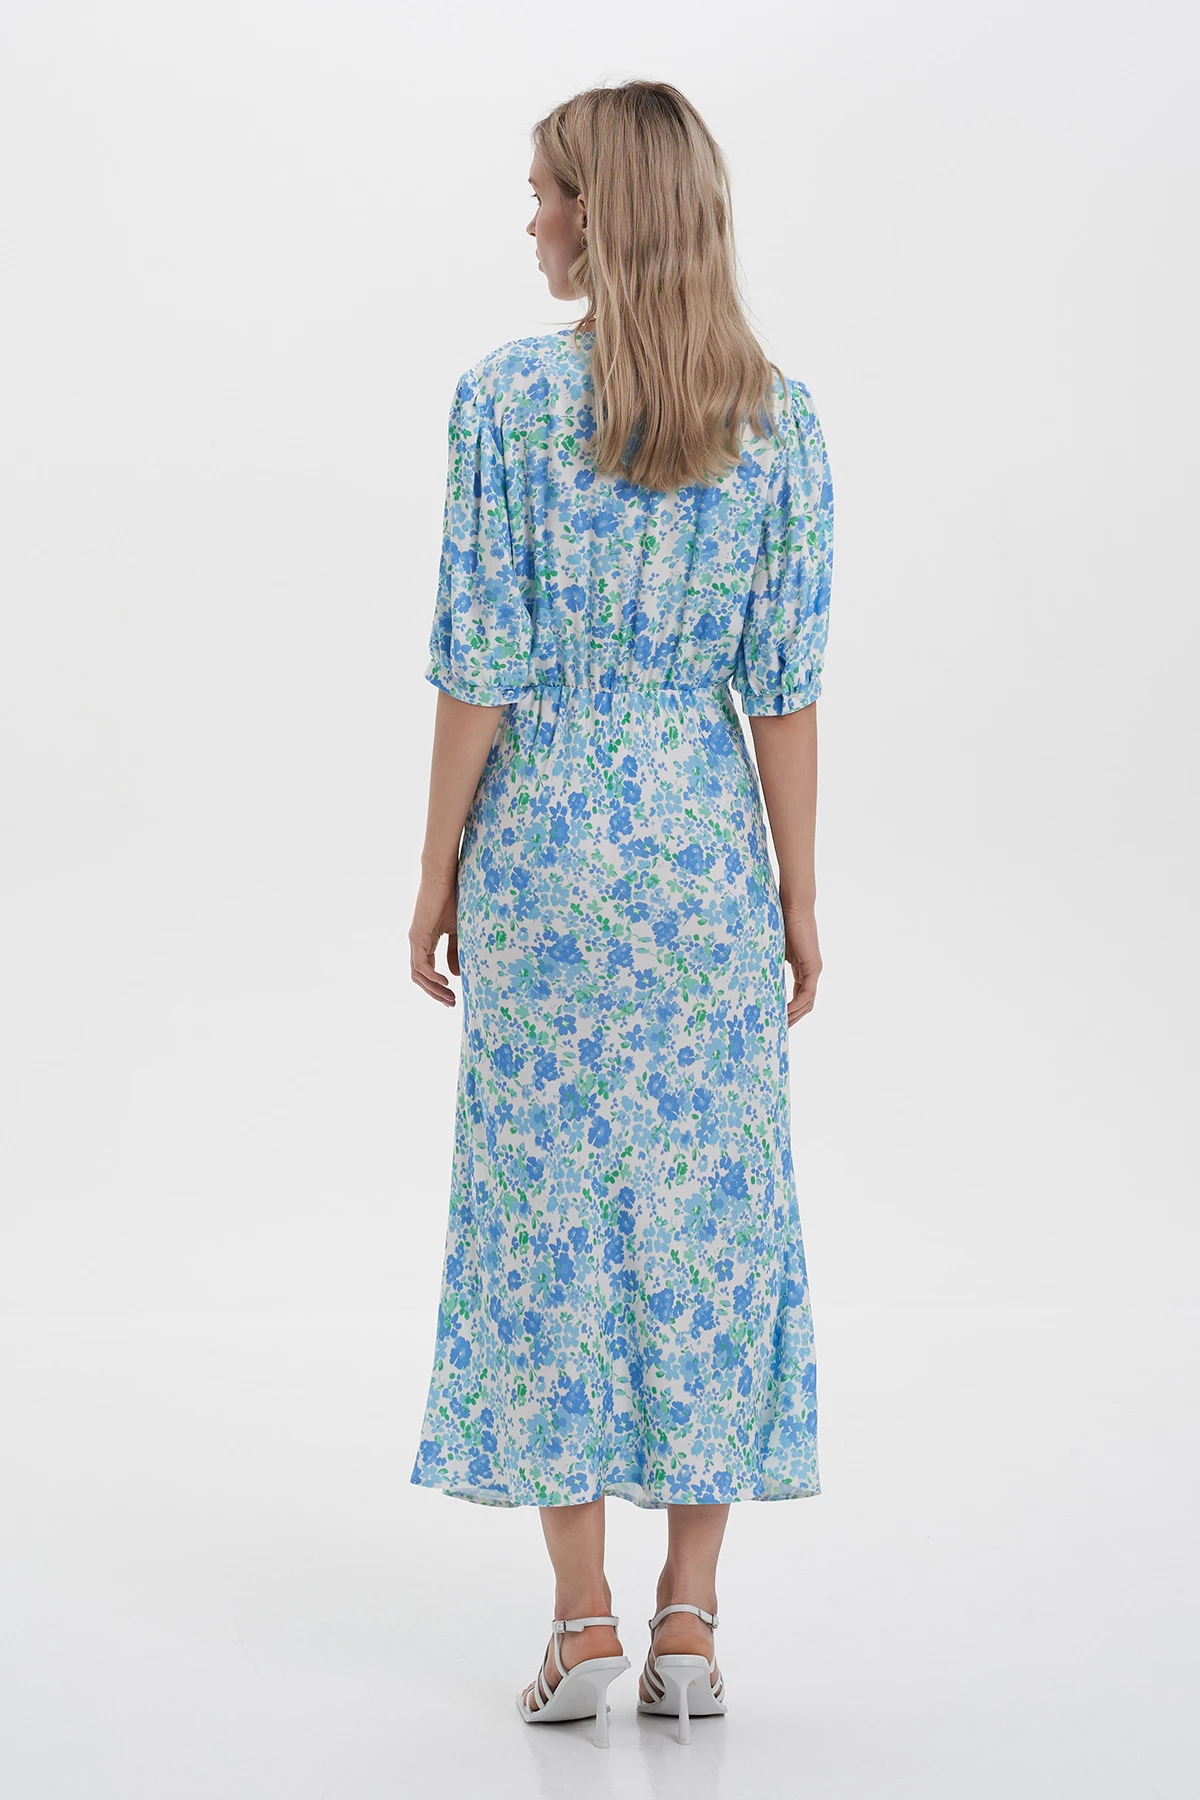 Сукня міді з коротким рукавом в принт "блакитні квіти" зі 100% віскози, фото 2